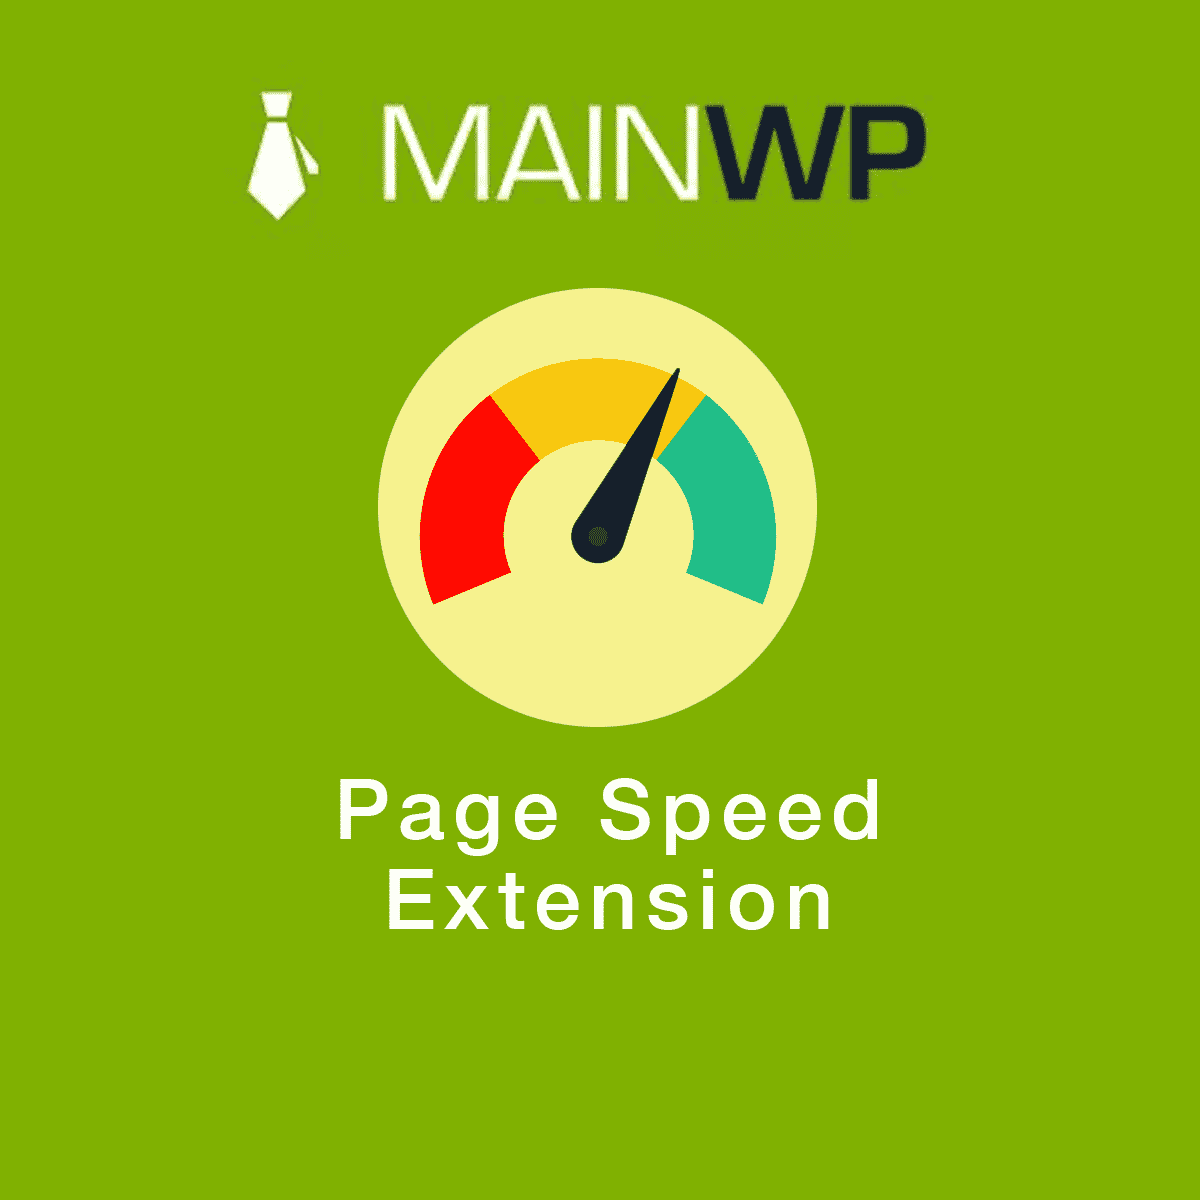 دانلود افزونه وردپرس MainWP Page Speed